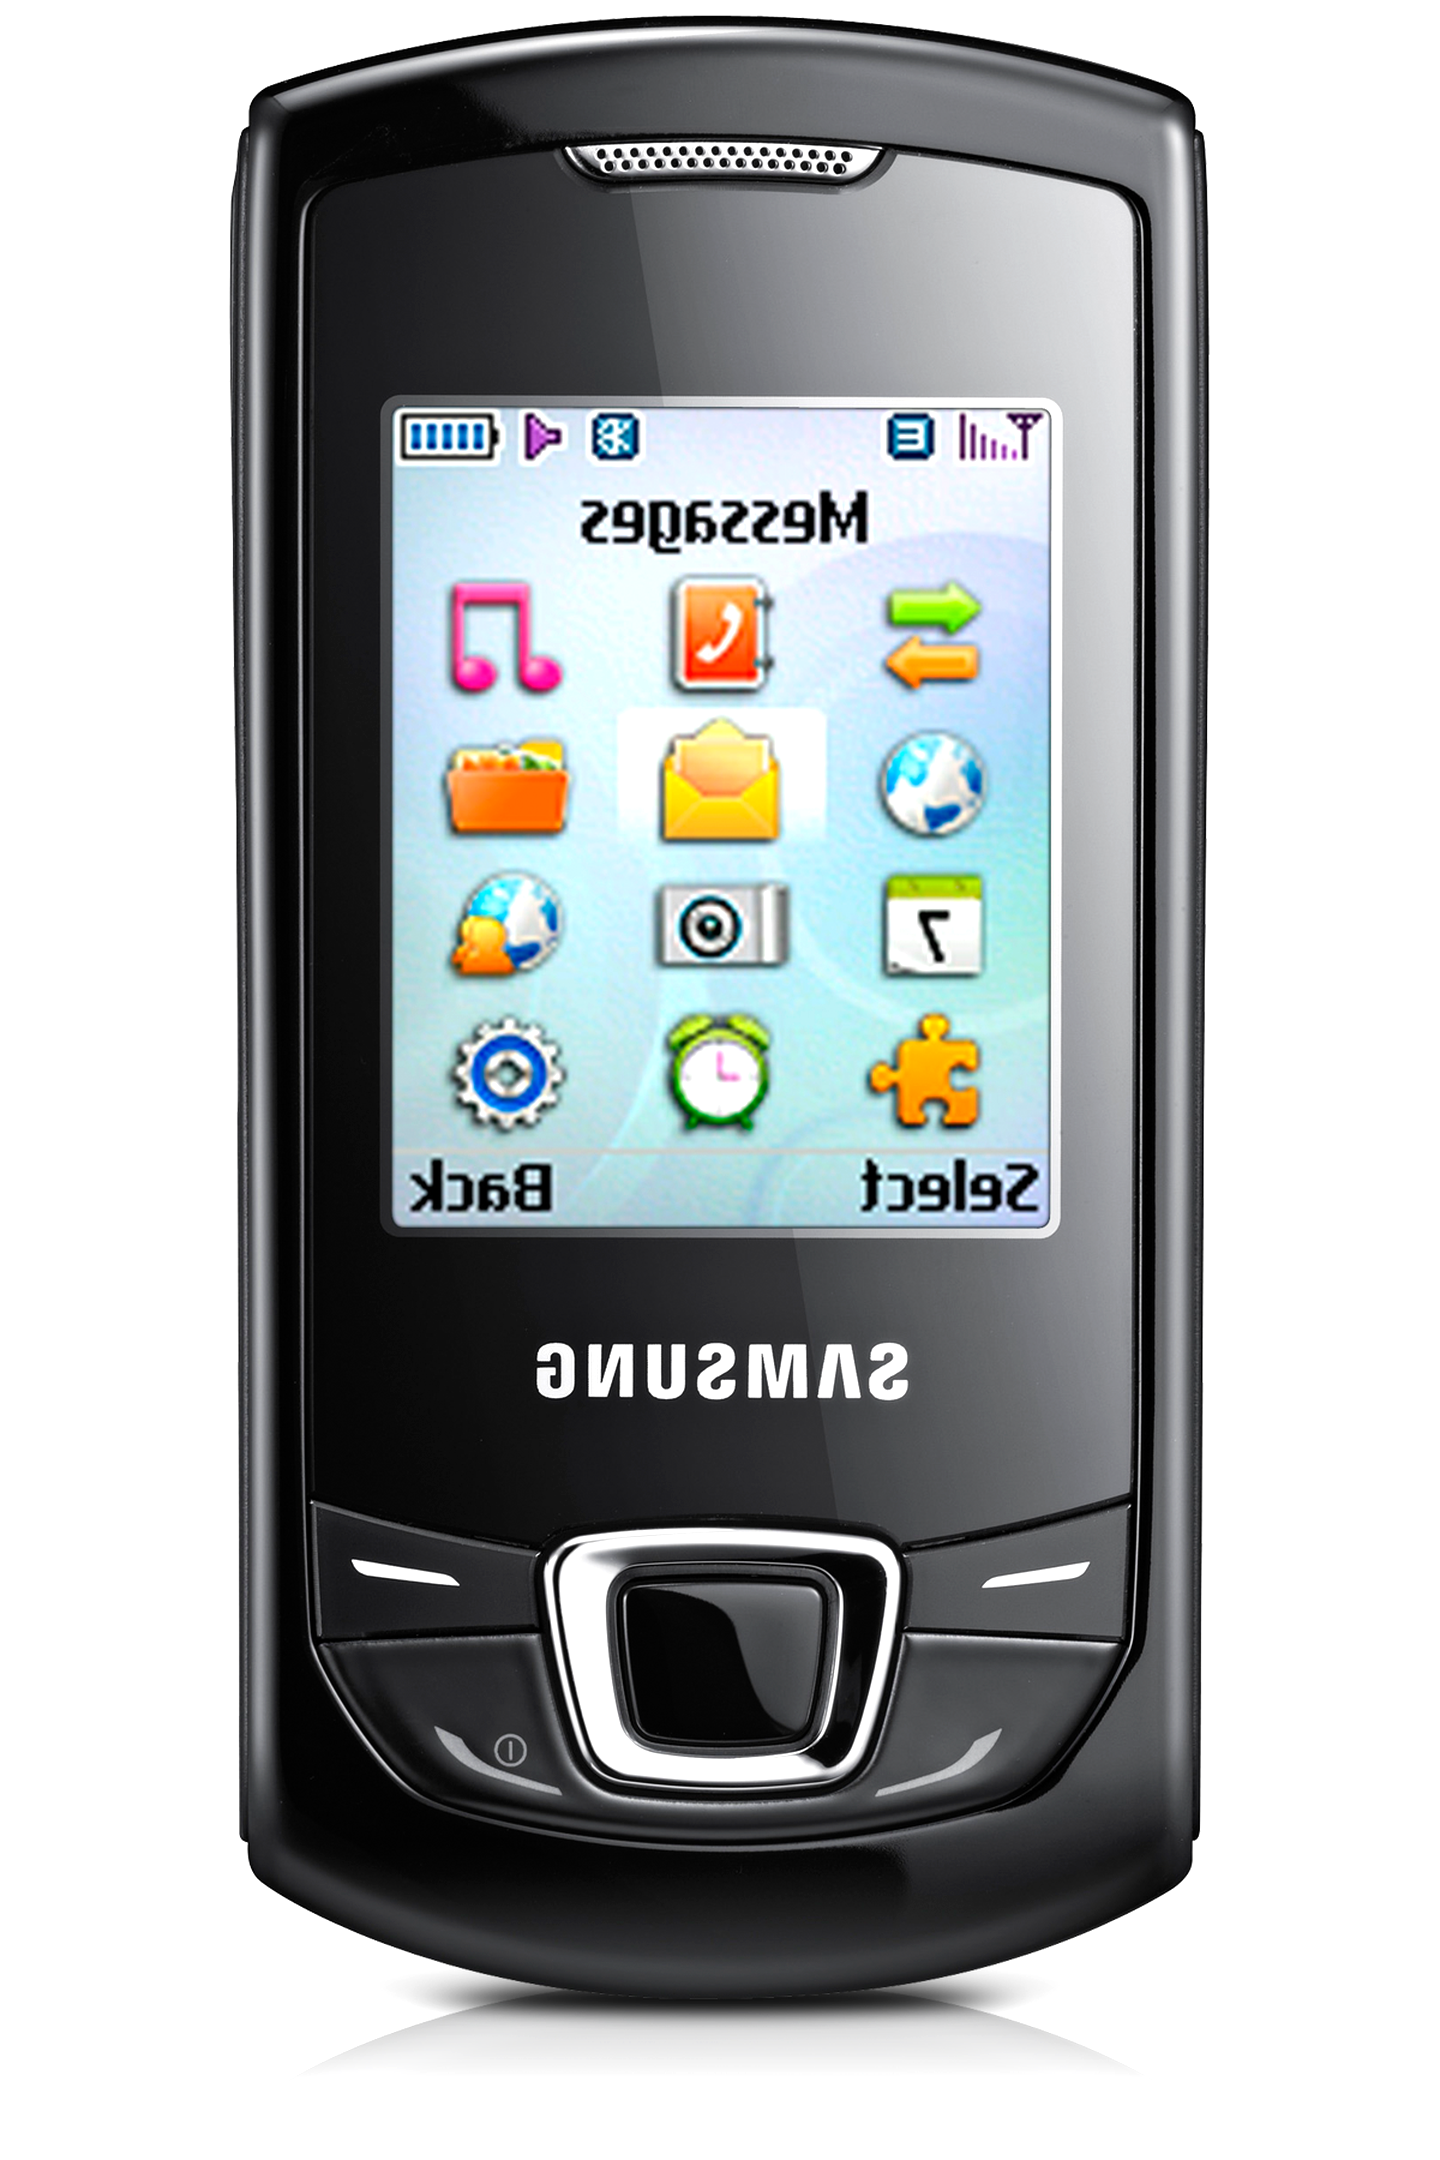 Samsung Handy Gt E2550 gebraucht kaufen! Nur 4 St. bis -65 ...